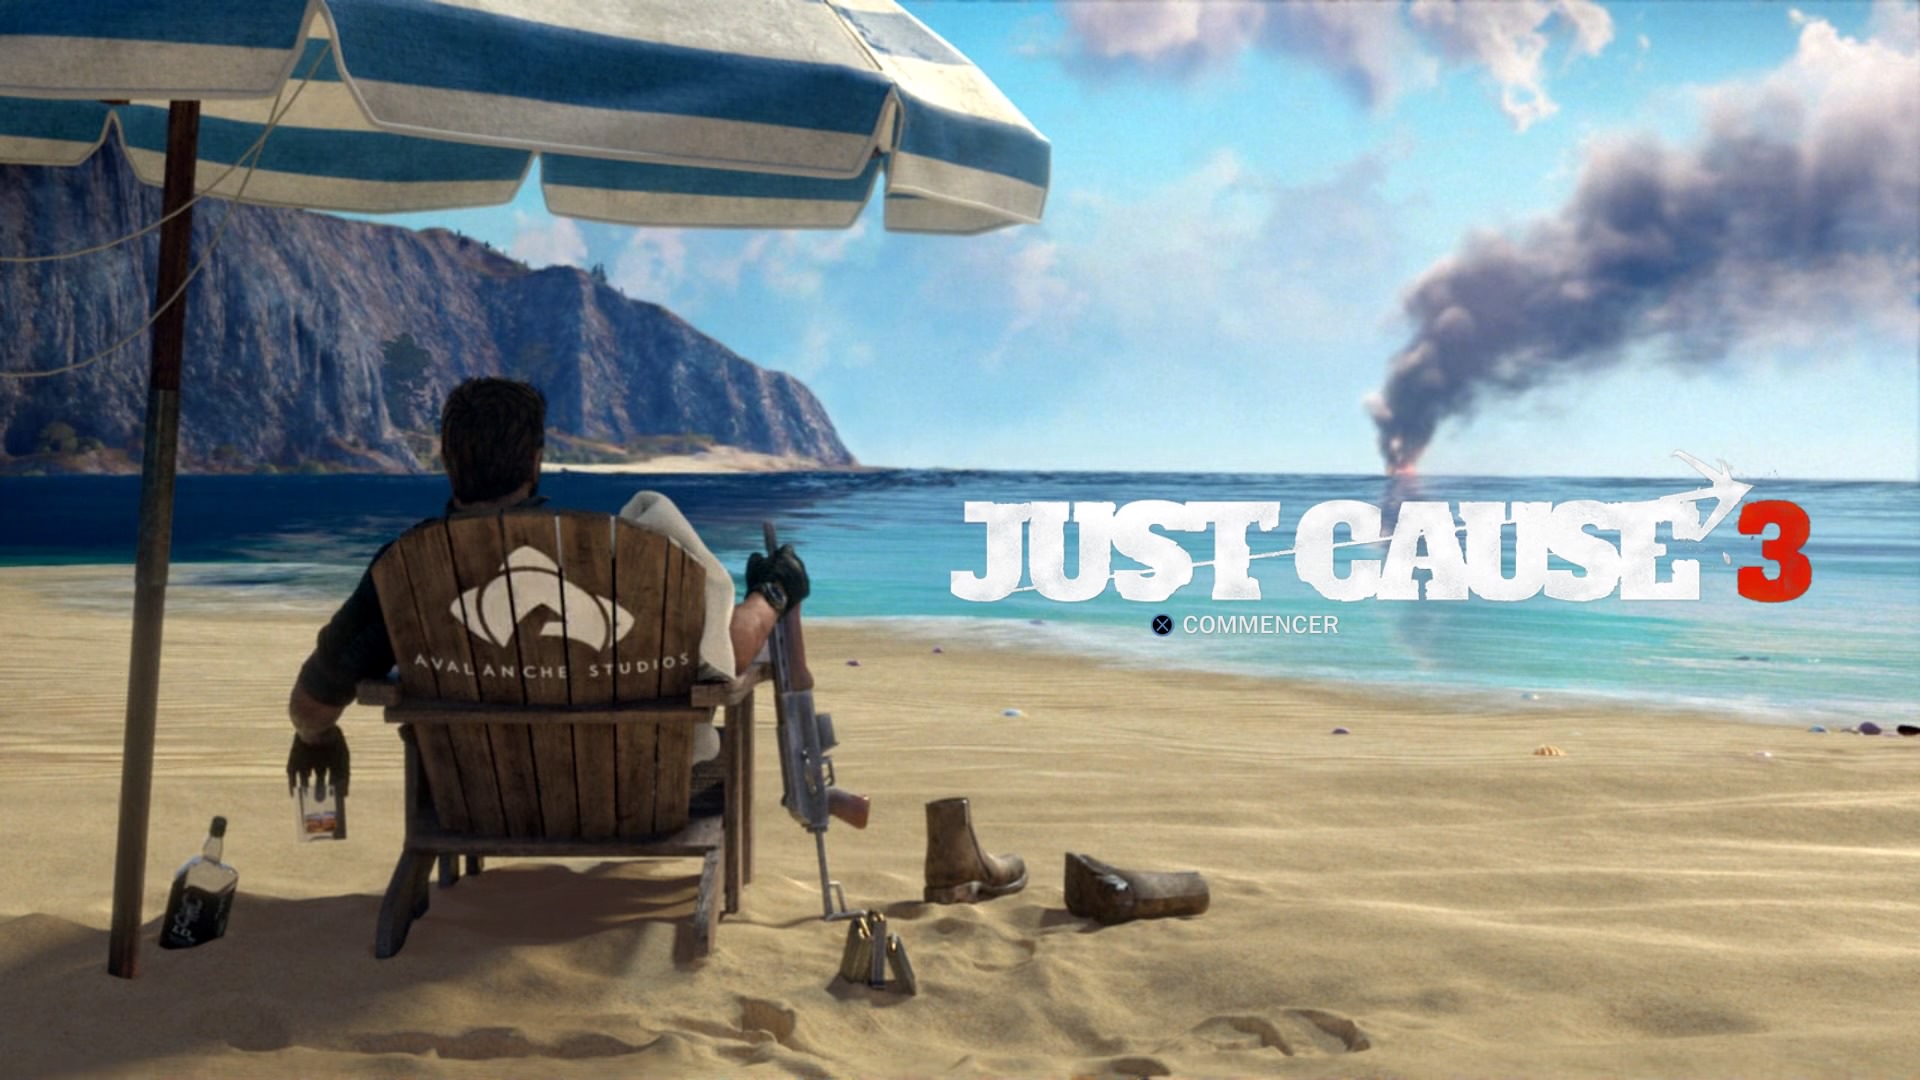 Le trailer de lancement de Just Cause 3 - JVFrance - 1920 x 1080 jpeg 323kB